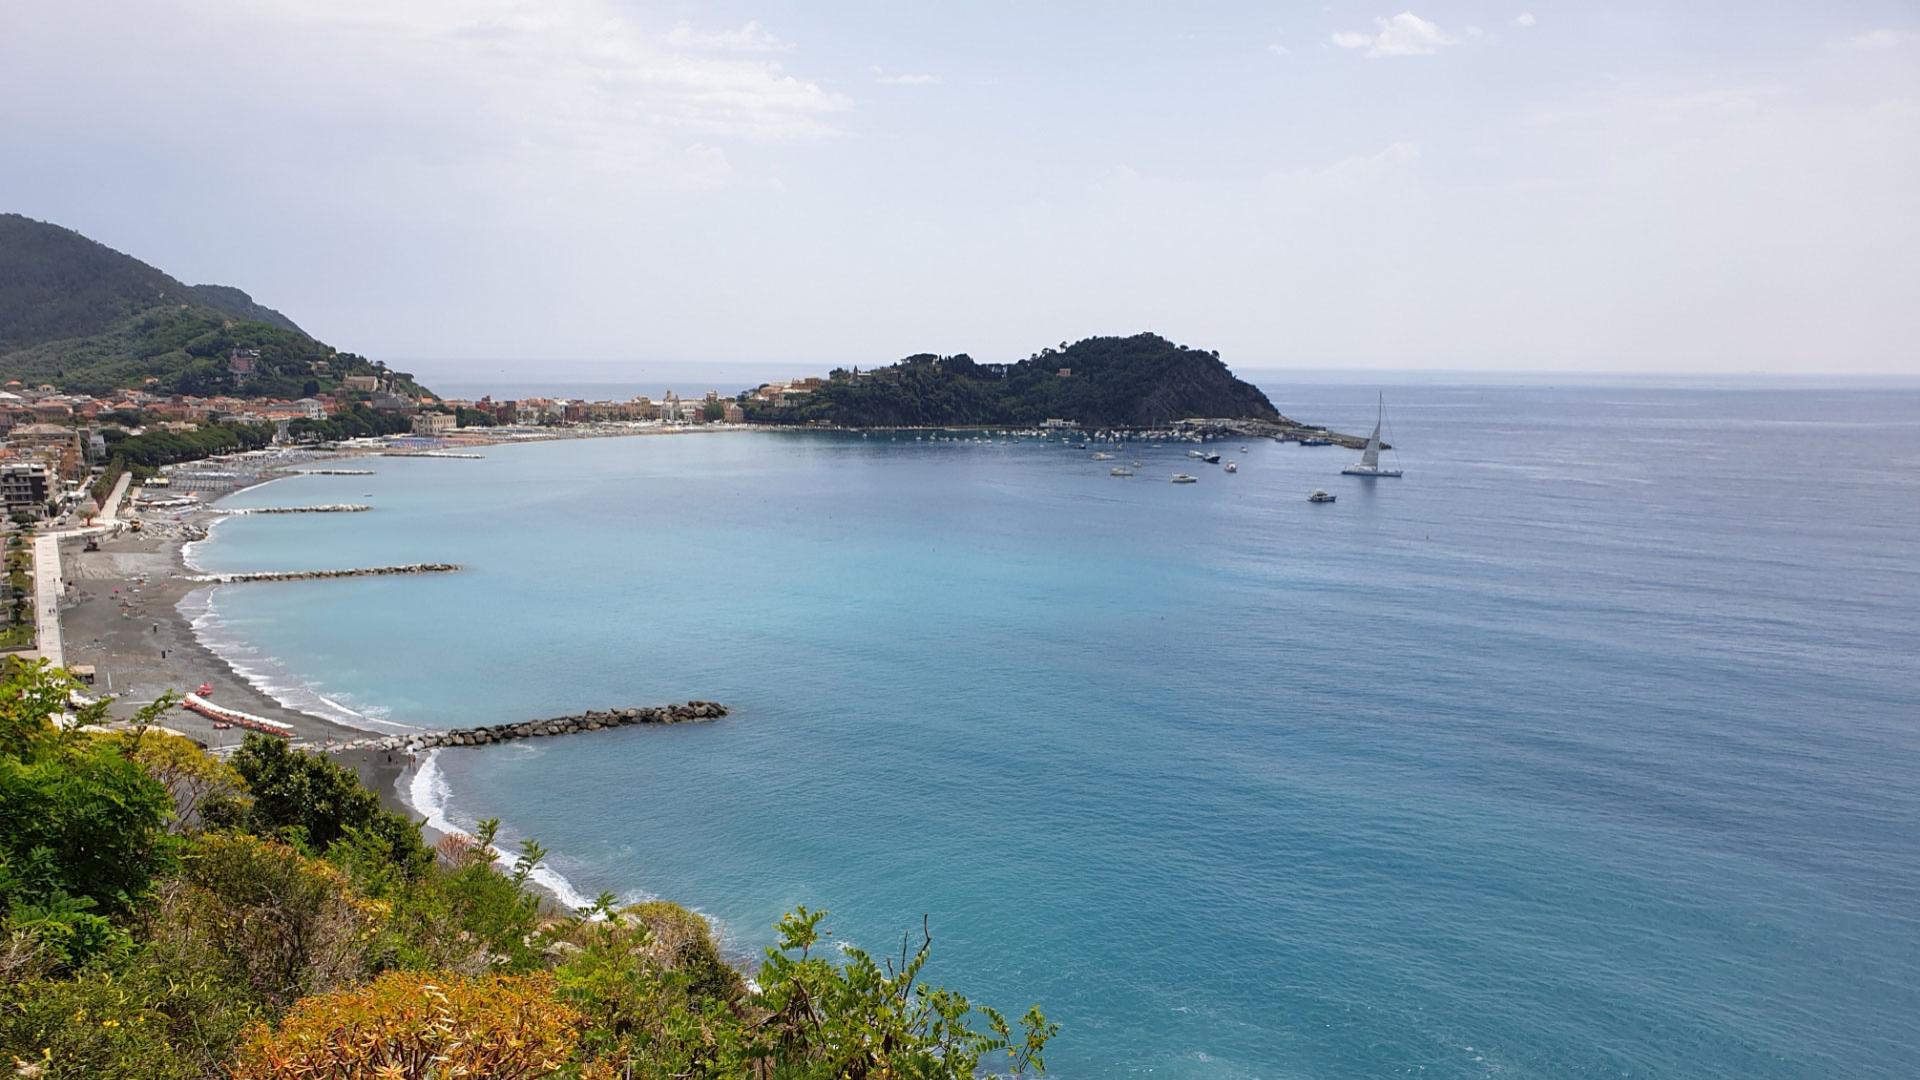 Vista panoramica di una baia con spiaggia, mare azzurro e barche ormeggiate.